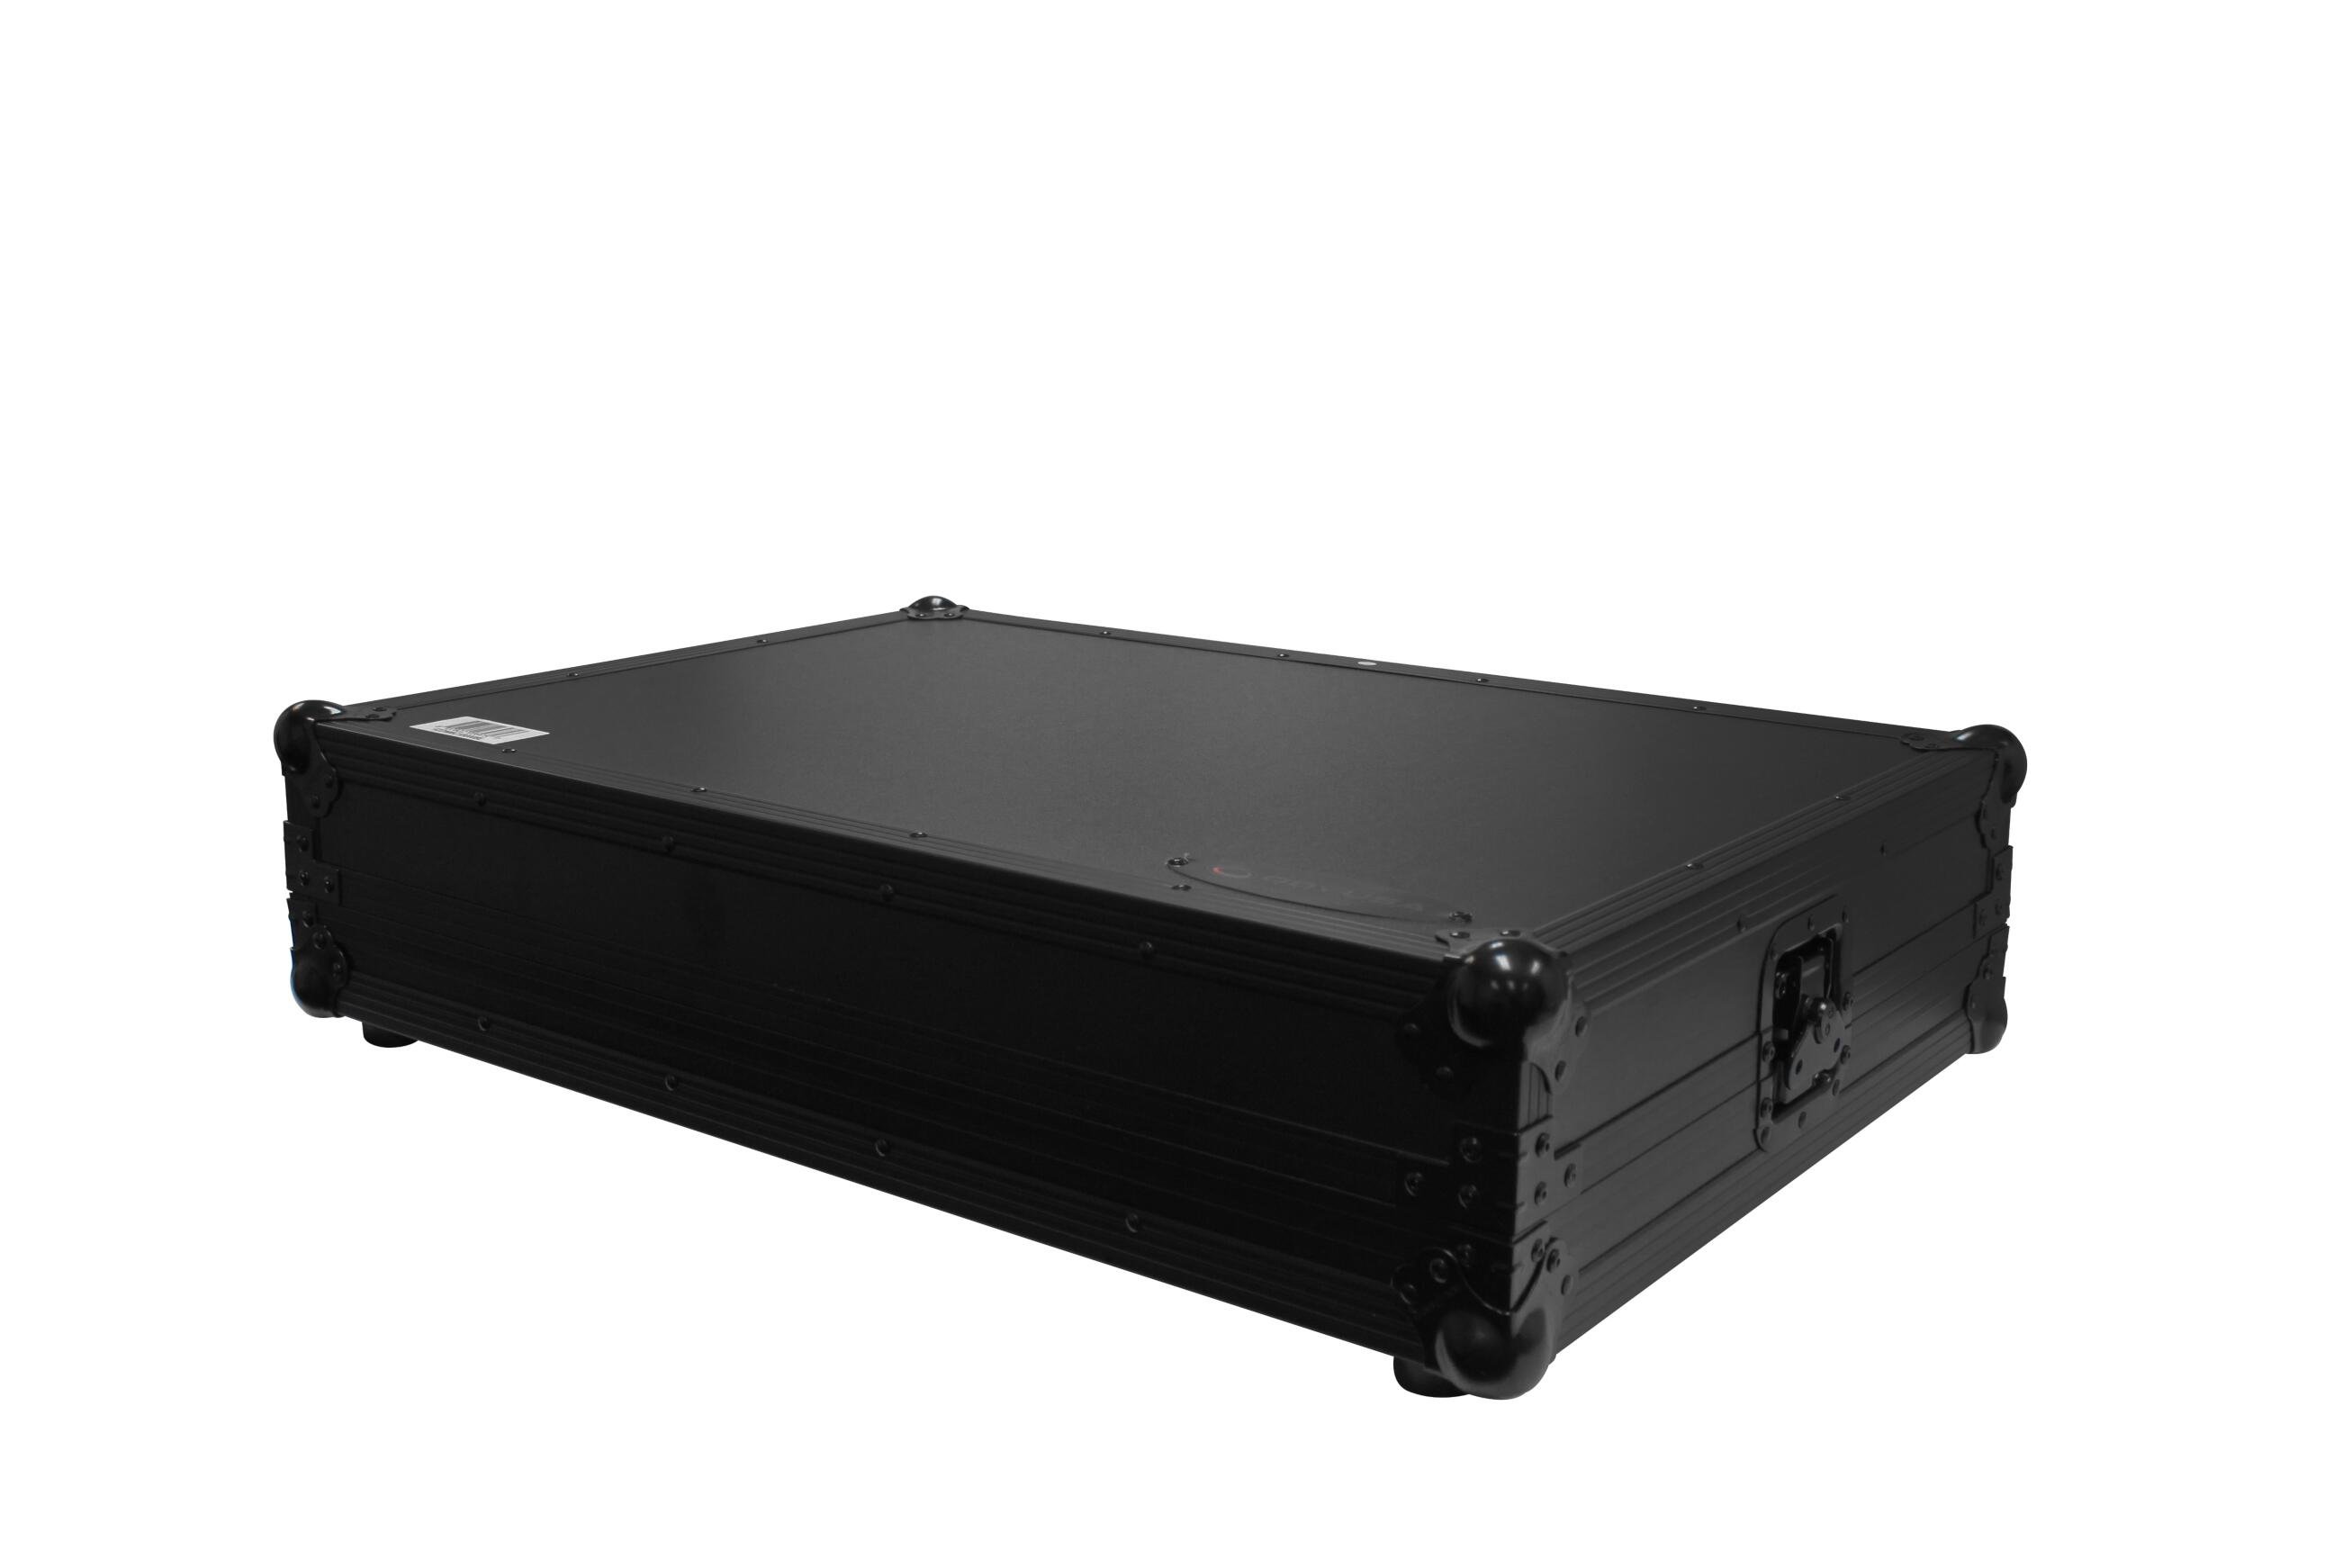 Odyssey FZDNMCX8000BL Case for Denon MCX8000 DJ Controller, Black 